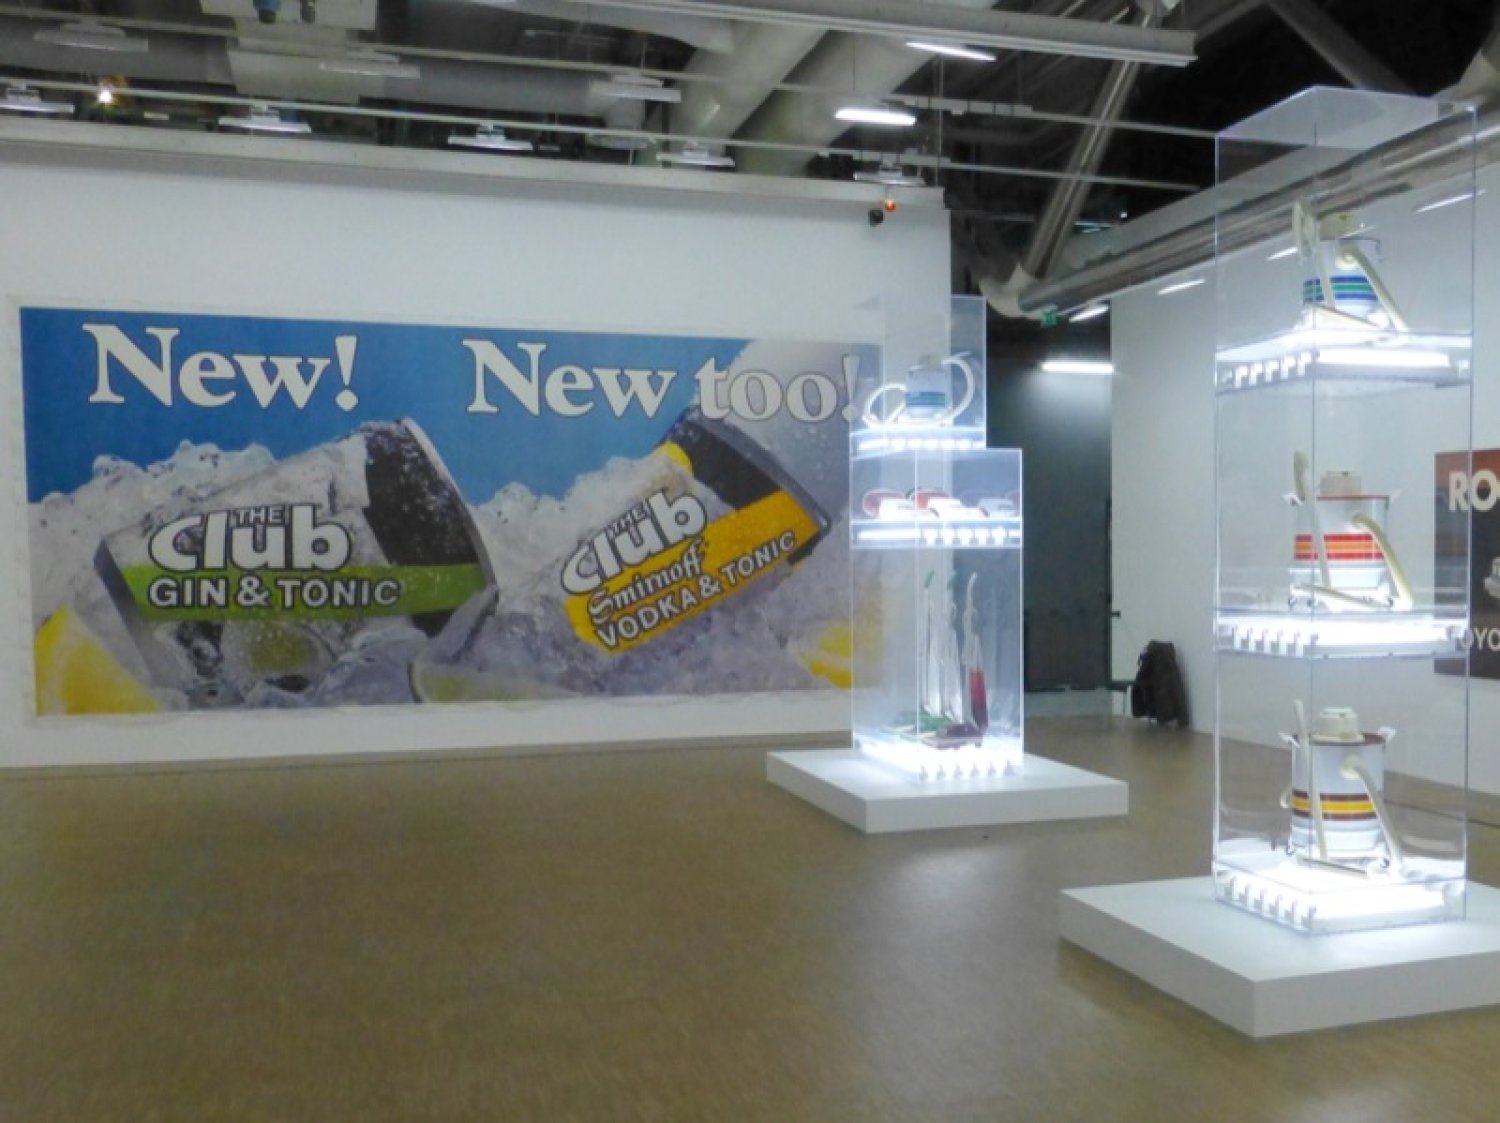 Rétrospective Jeff Koons au Centre Pompidou